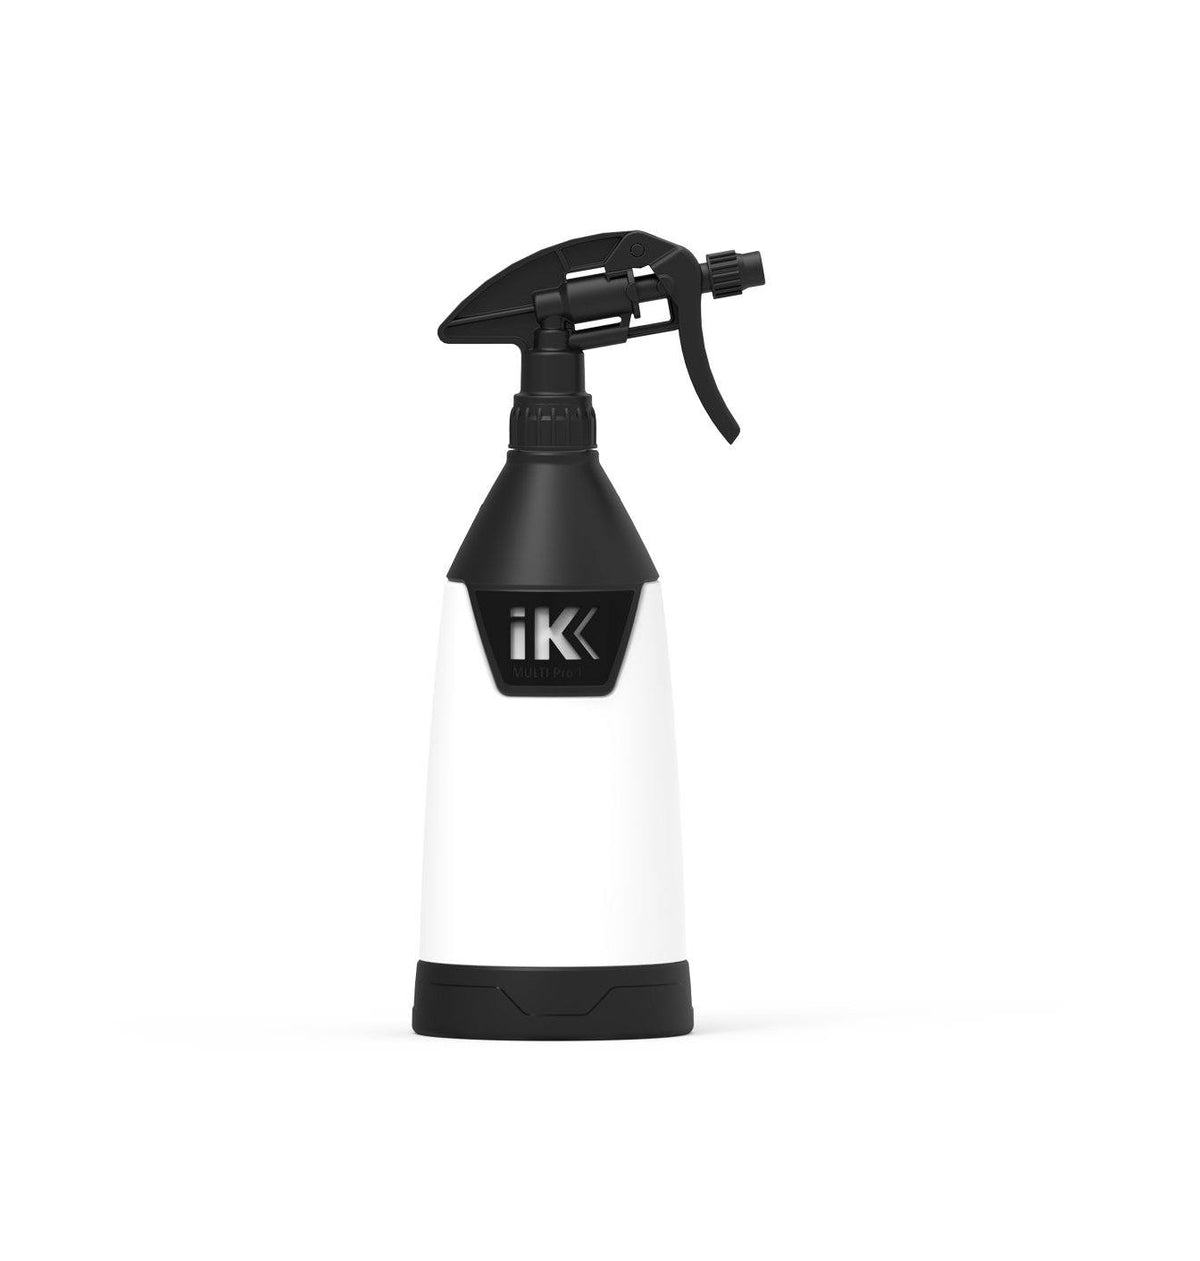 IK FOAM Pro 12 Professional Sprayer